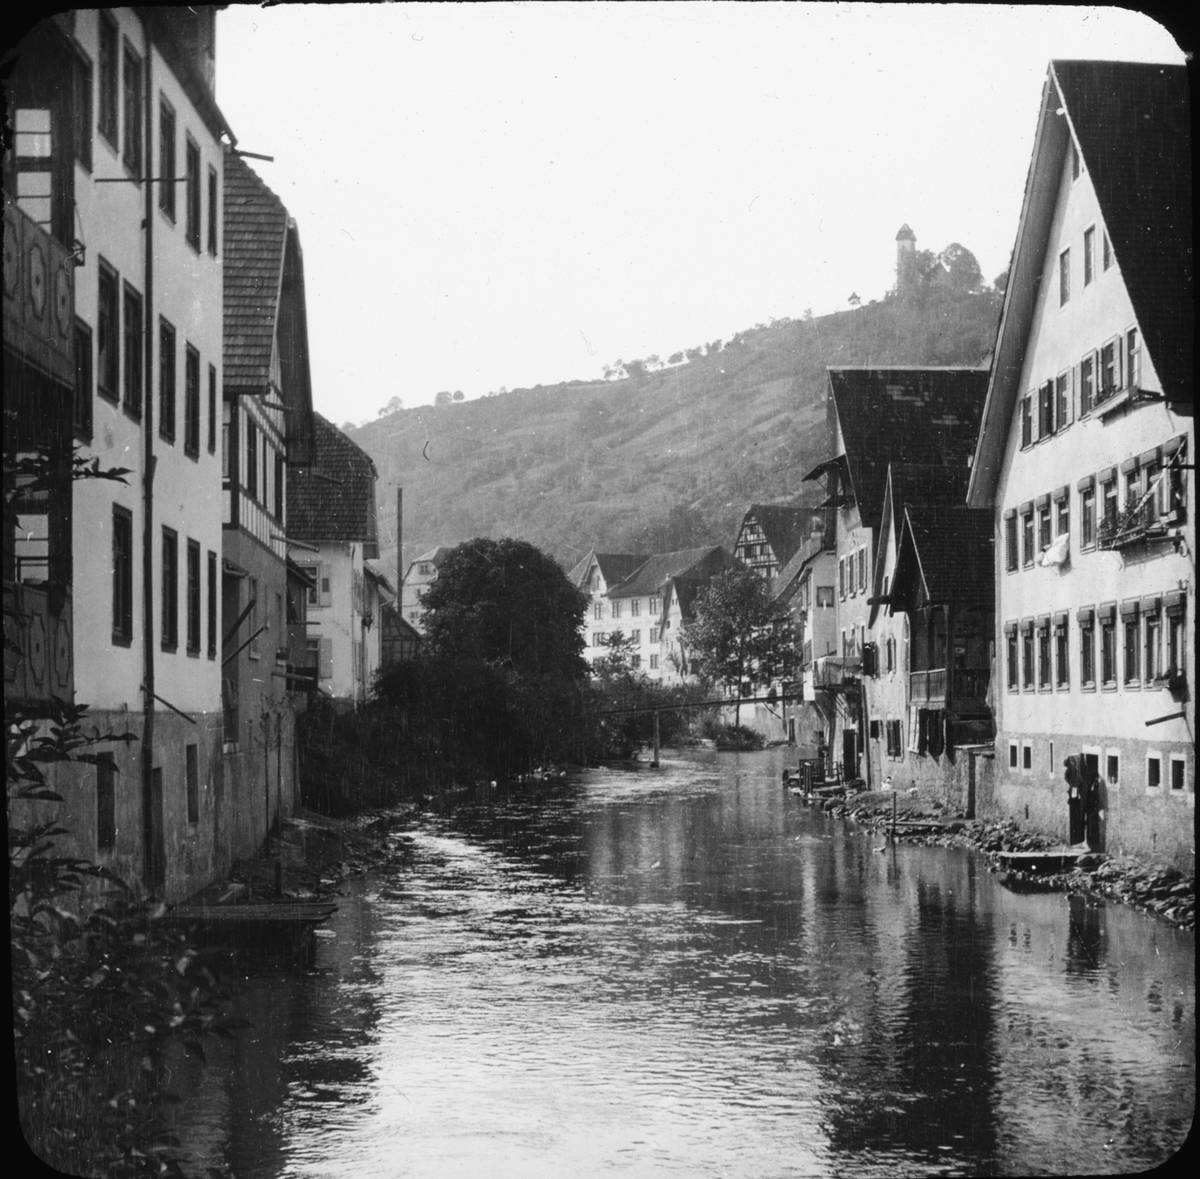 Skioptikonbild med motiv av floden Neckar som flyter genom Horb am Neckar.
Bilden har förvarats i kartong märkt: Resan 1908. Tübingen 3. Horb.